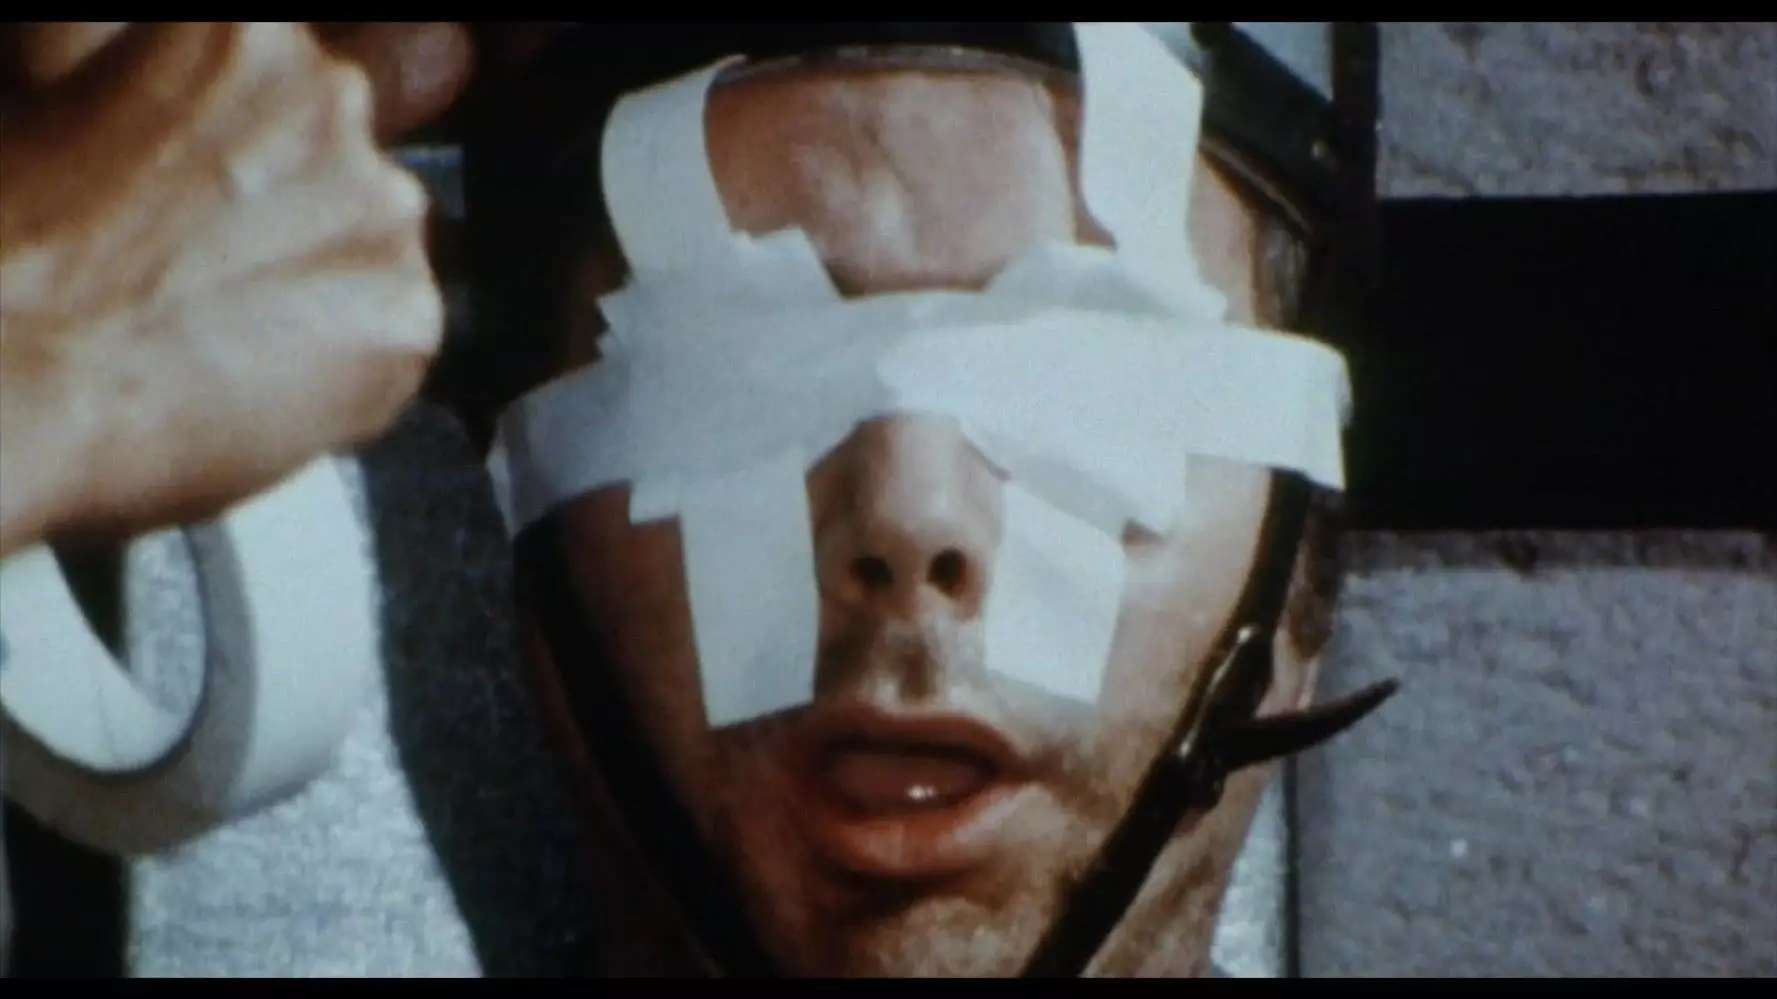 نمایش اعدام یک زندانی با صندلی الکتریکی در فیلم چهره های مرگ